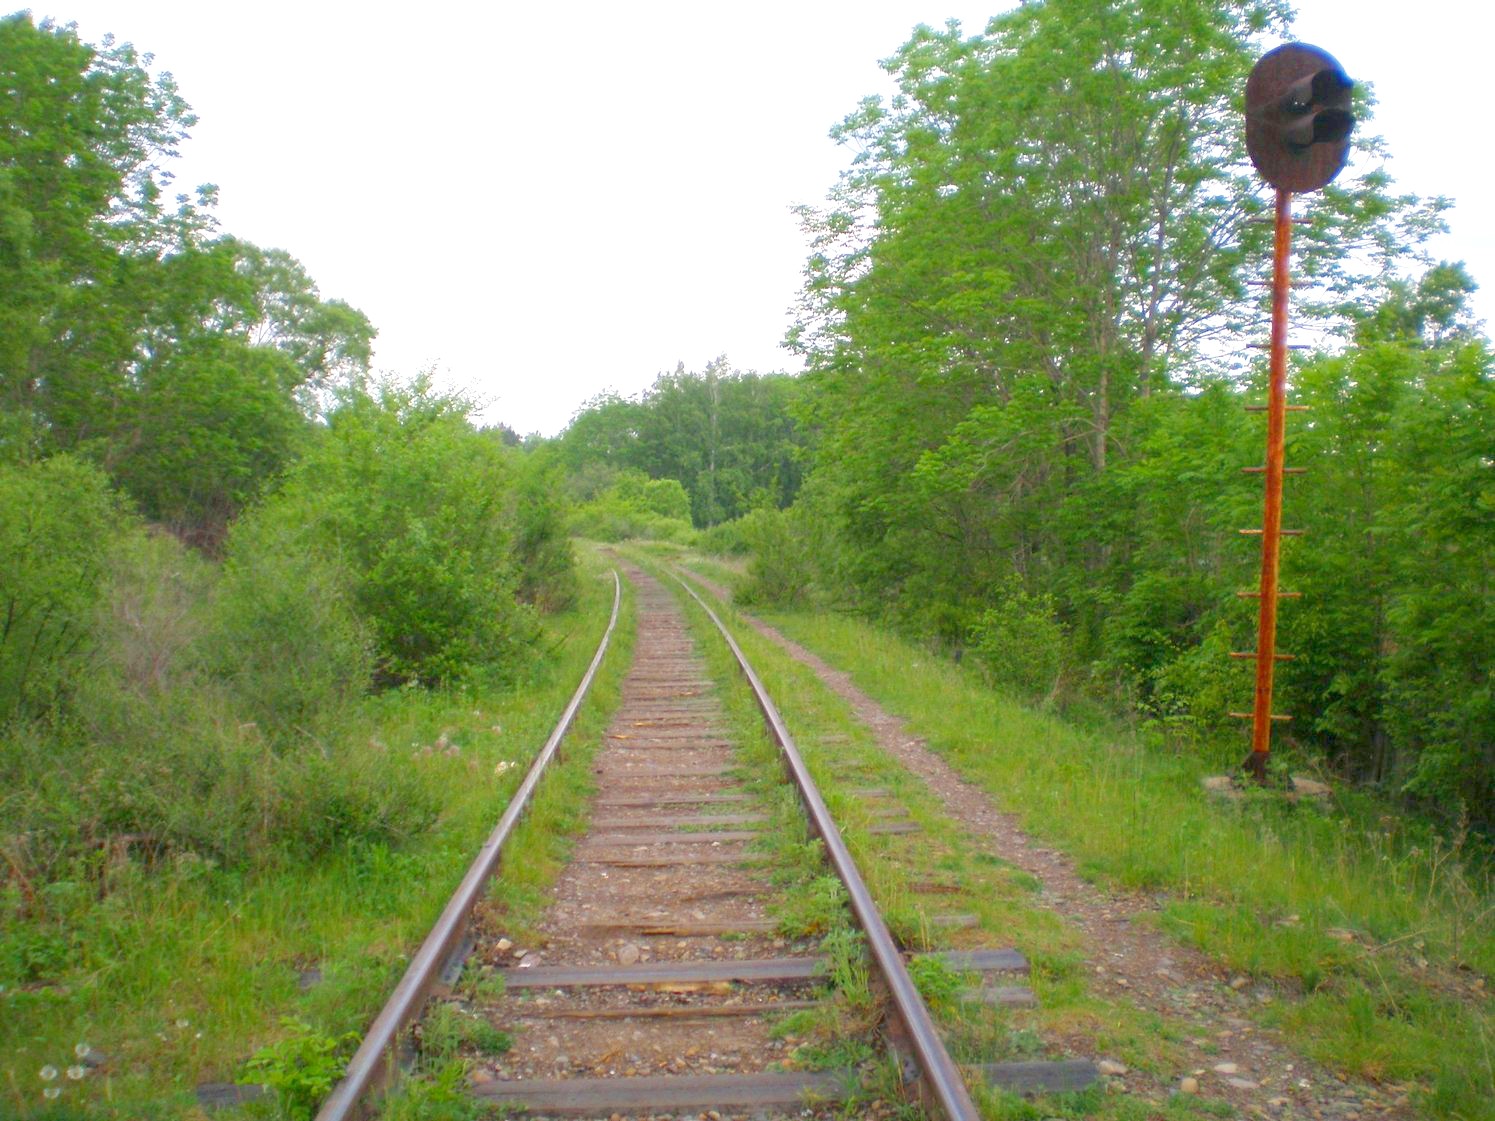 Оборская железная дорога — фотографии, сделанные в 2008 году (часть 2)